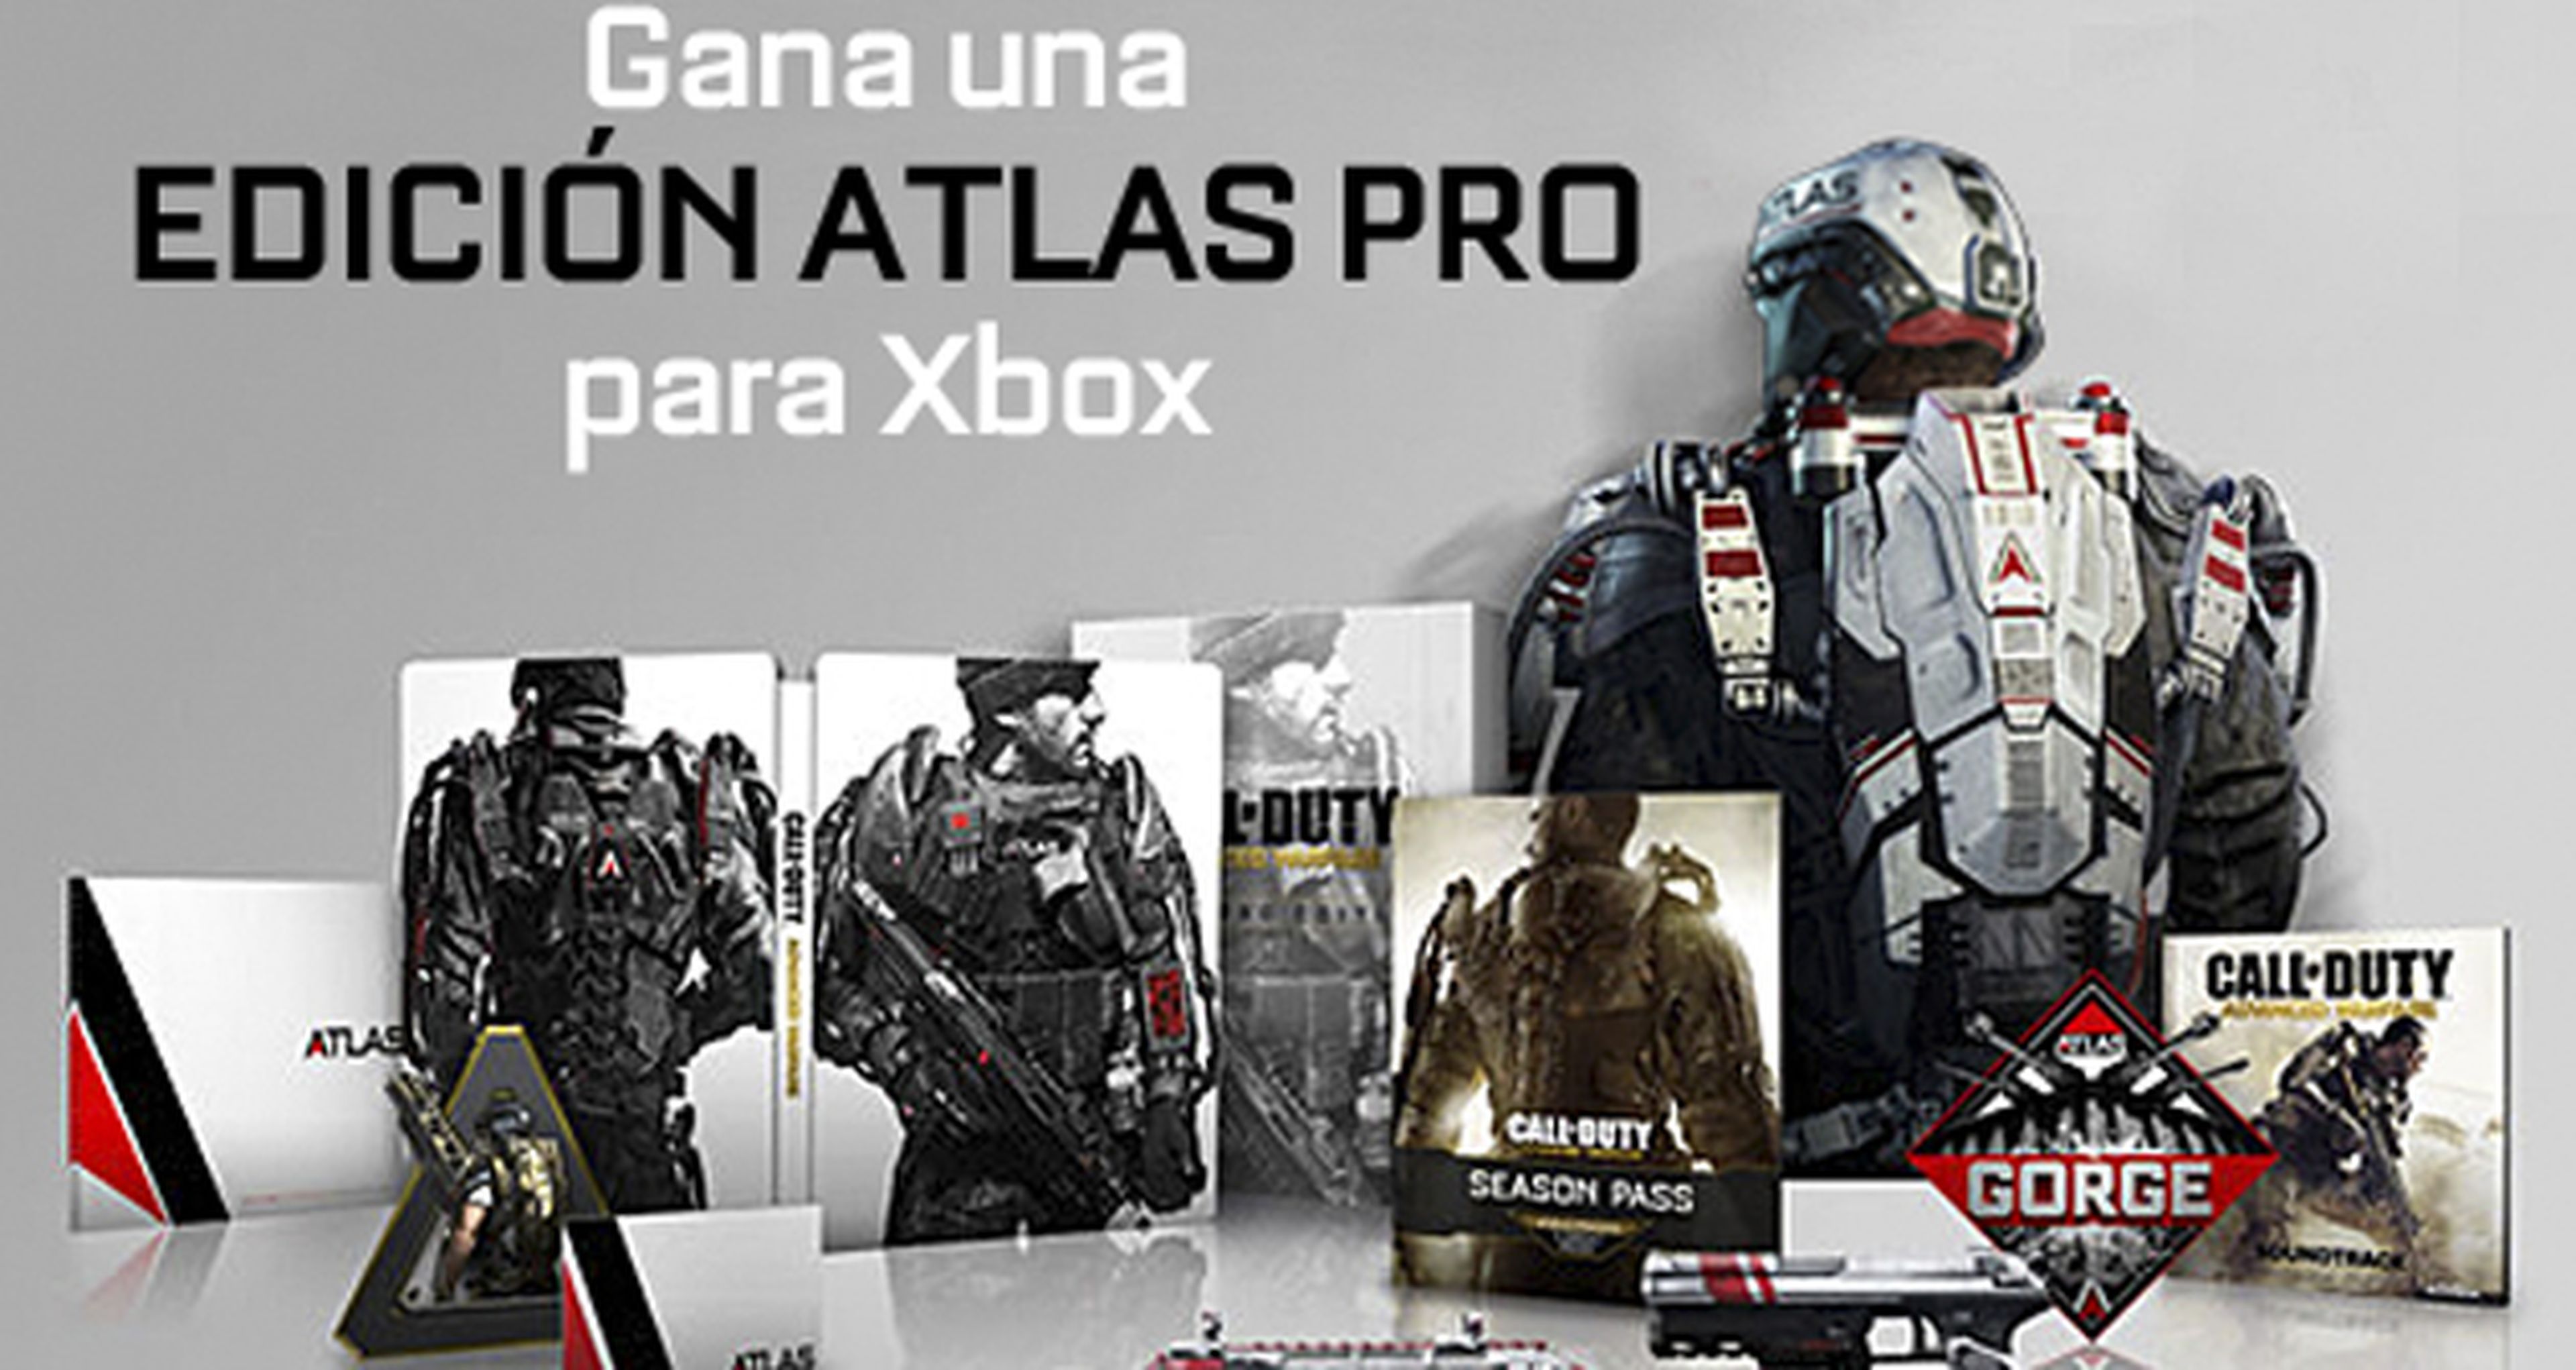 Concurso Call of Duty Advanced Warfare: ¡Gana una edición Atlas Pro!